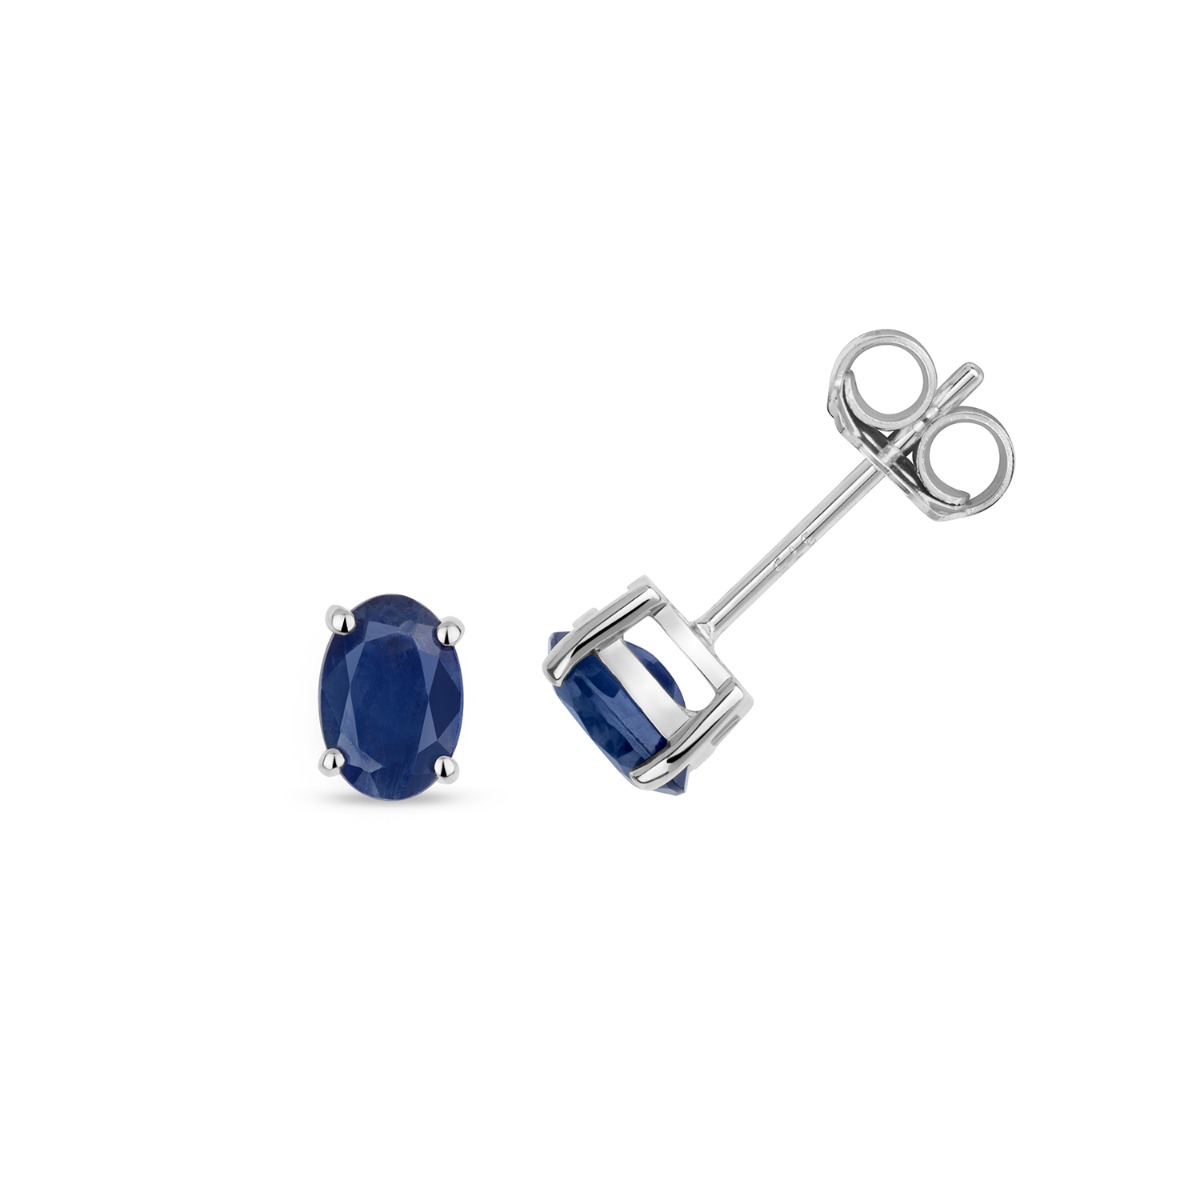 18K White Gold Sapphire Stud Earrings | Shreve & Co. | Shreve & Co. Jewelers